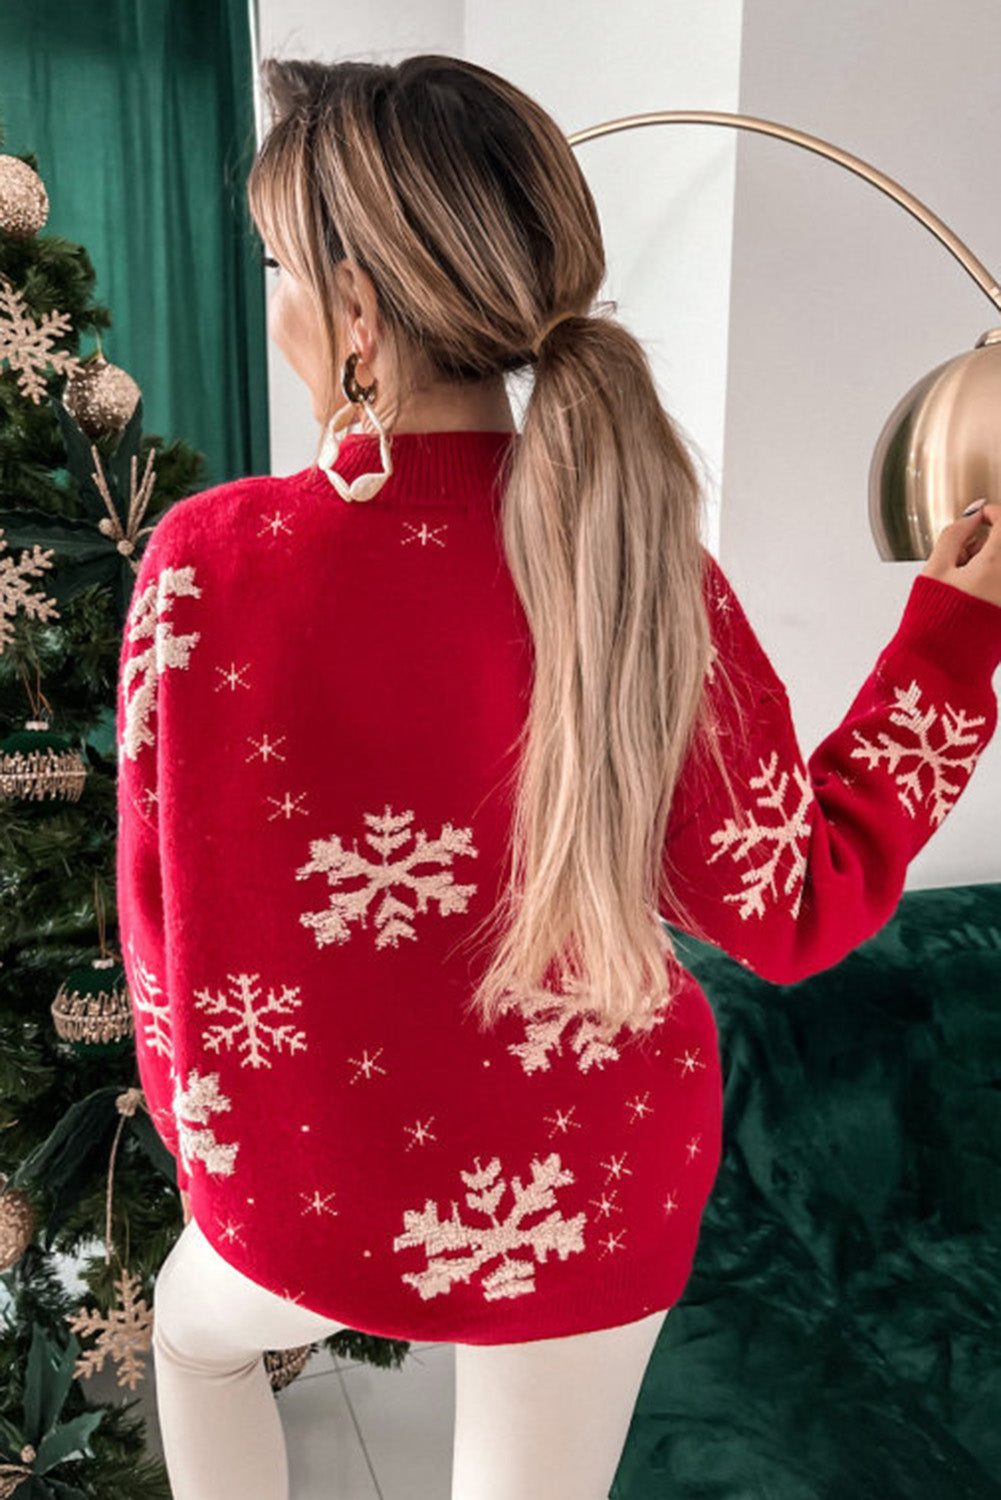 Rdeč božični pulover z lažnim ovratnikom v obliki snežinke